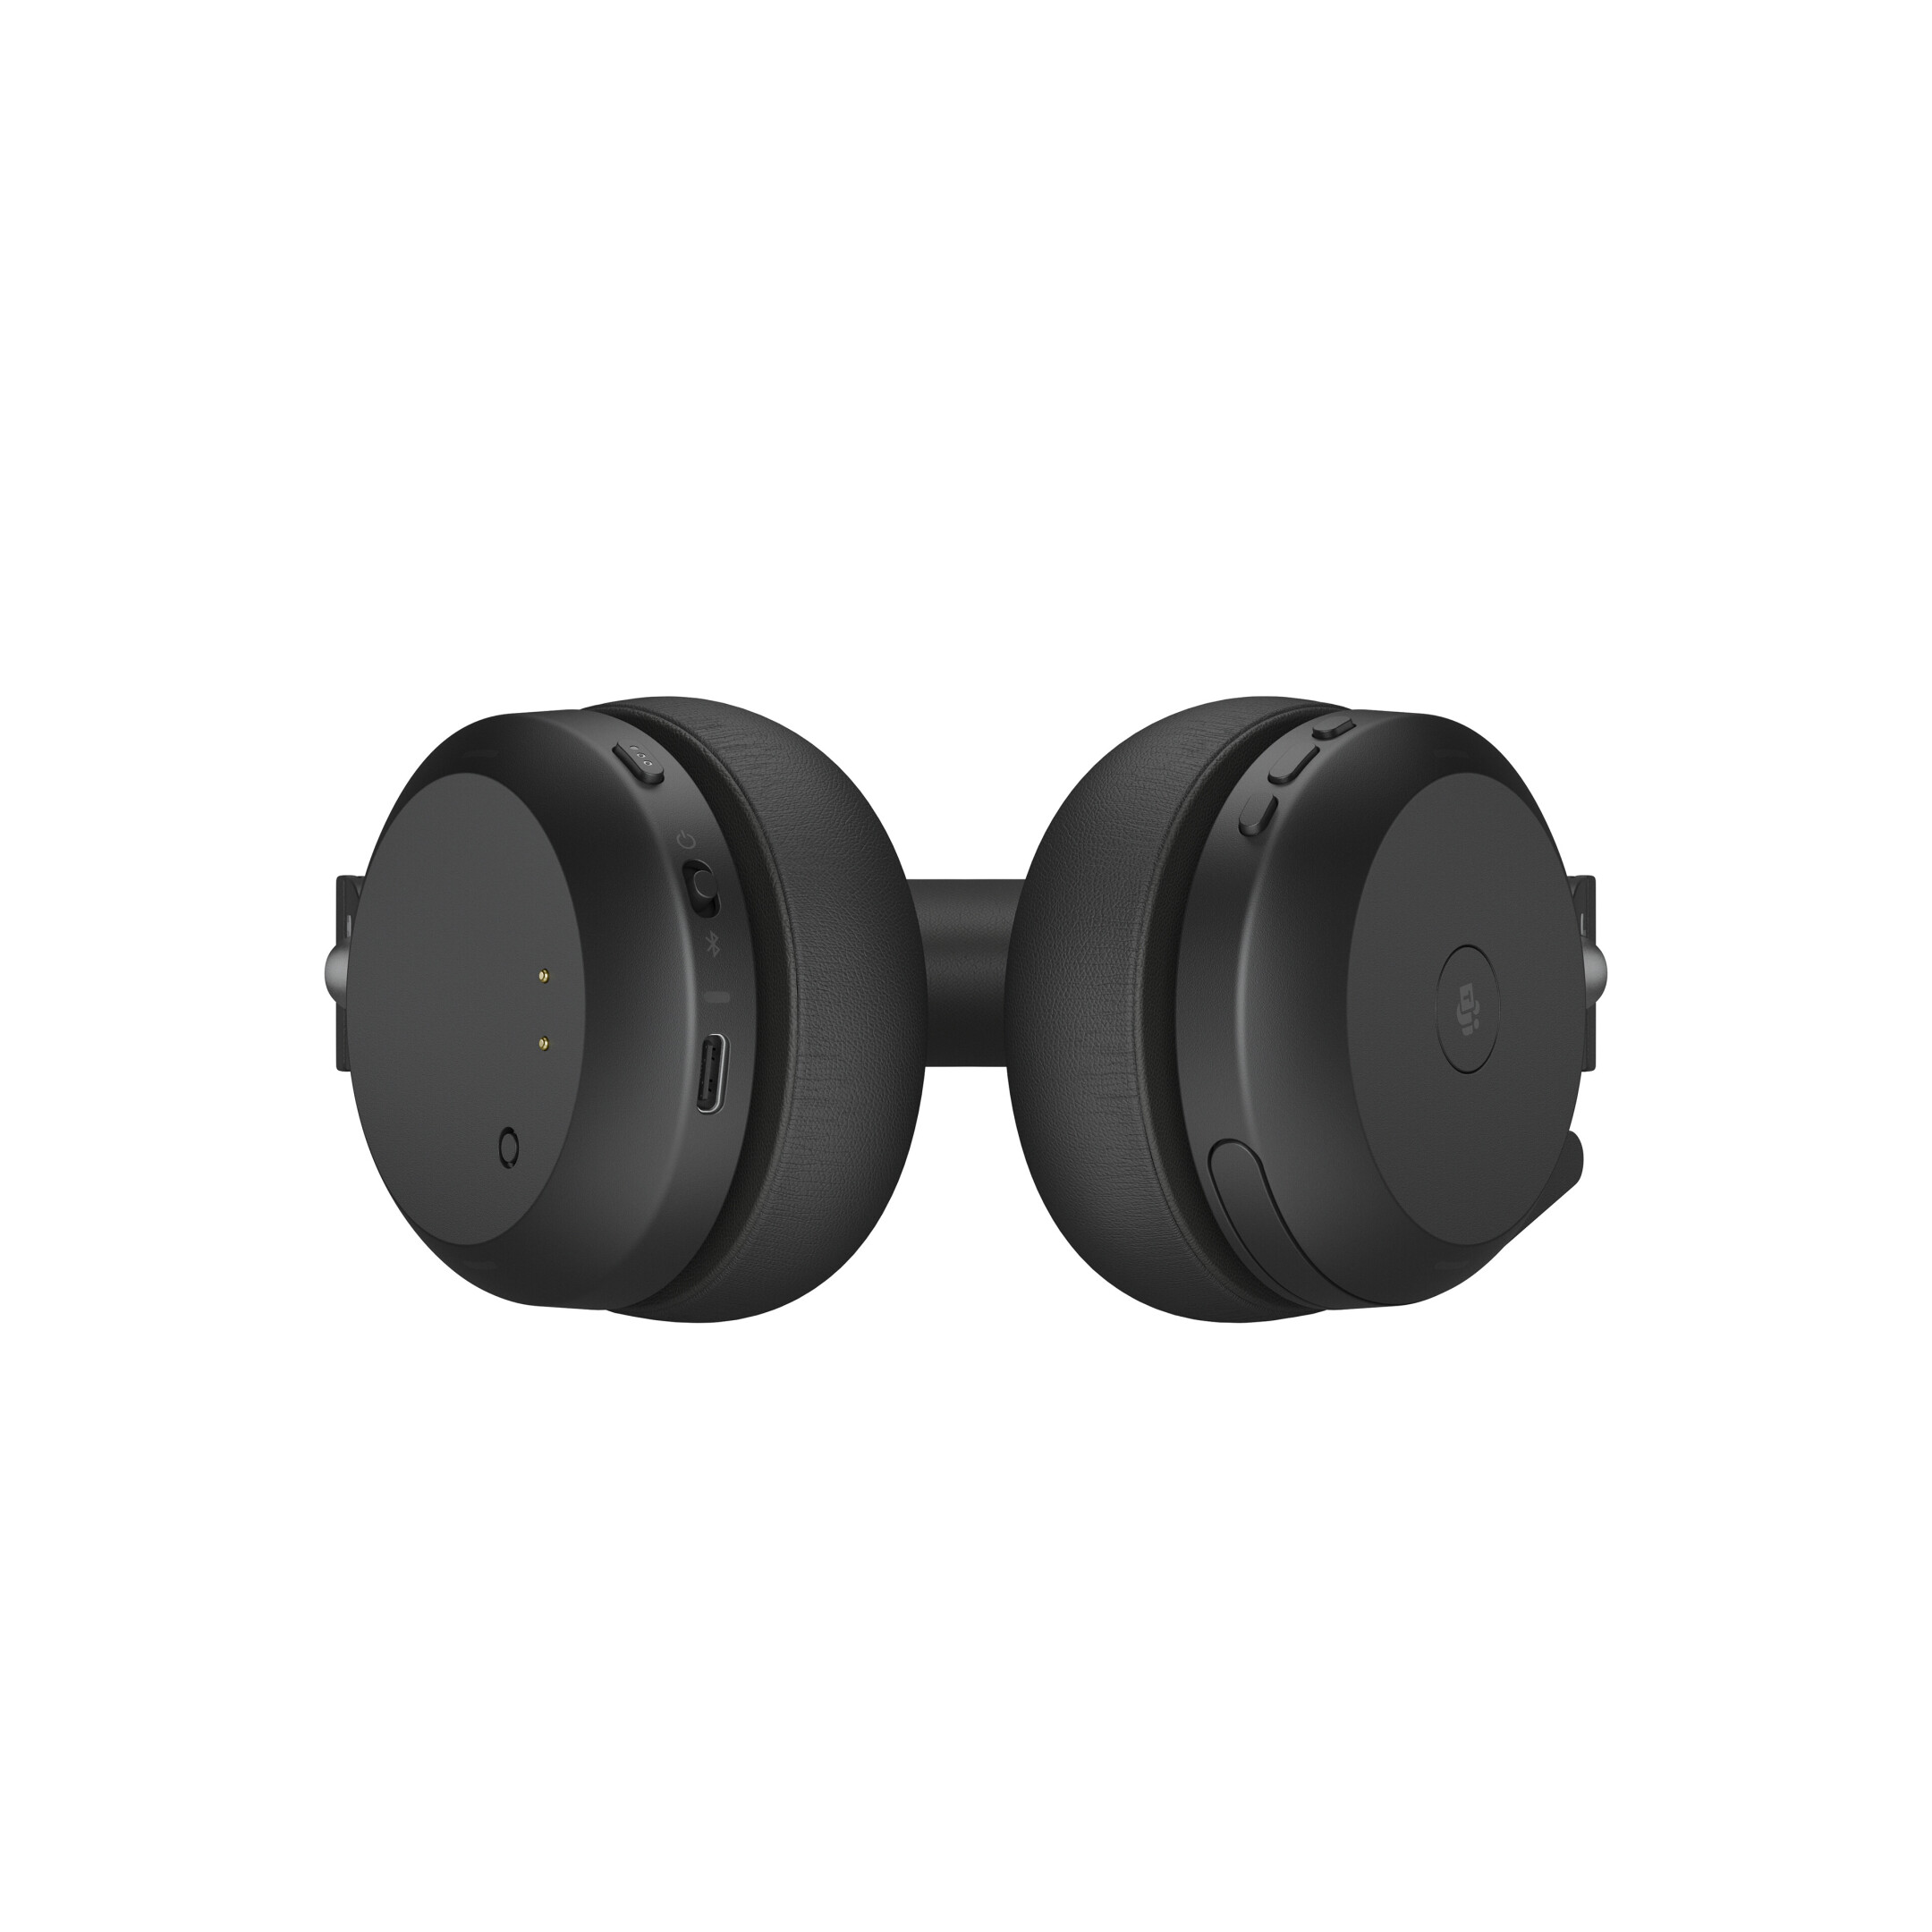 Jabra-Evolve2-75-draadloos-Stereo-Headset-voor-MS-met-Desk-Stand-Bluetooth-USB-A-aansluiting-zwart